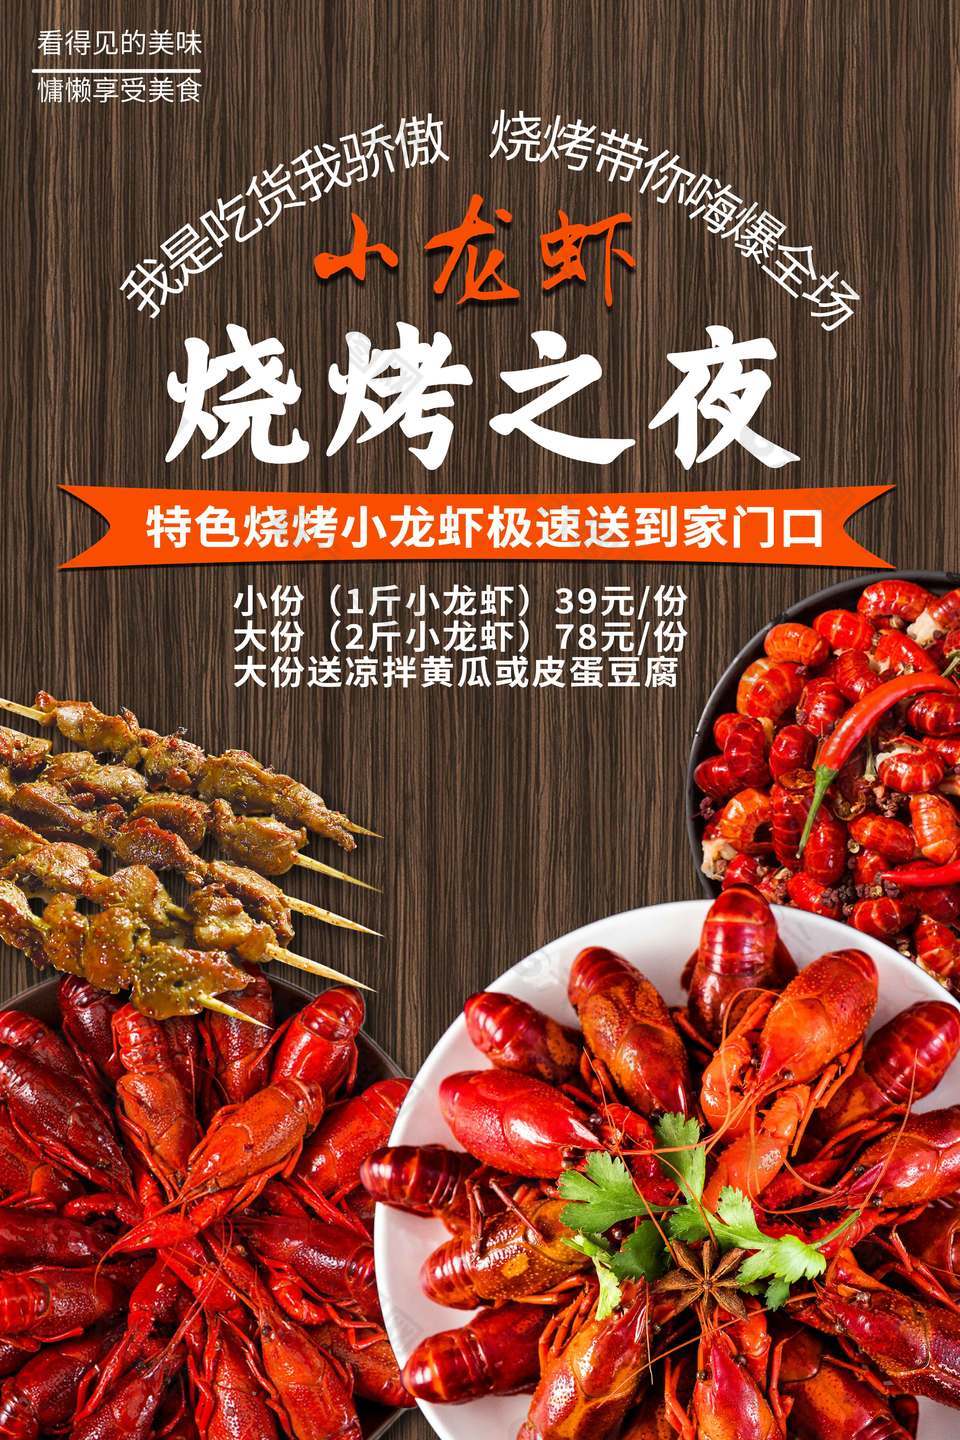 小龙虾烧烤之夜主题美食狂欢活动海报